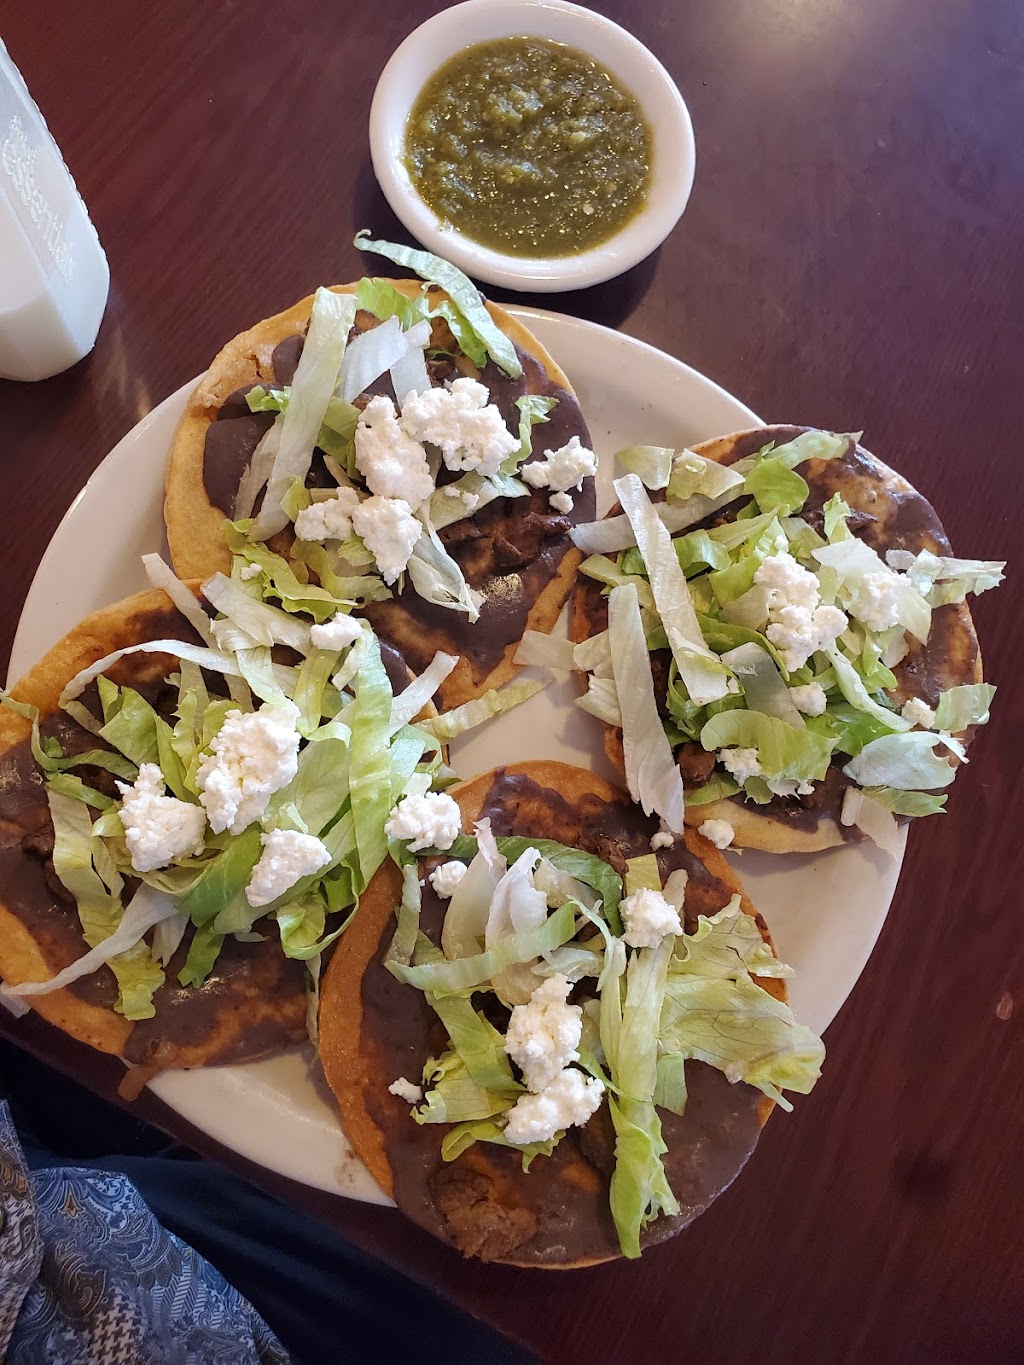 Mexican Taqueria Restaurant LLc | 858 Madison Ave, Albany, NY 12208, USA | Phone: (518) 599-5768